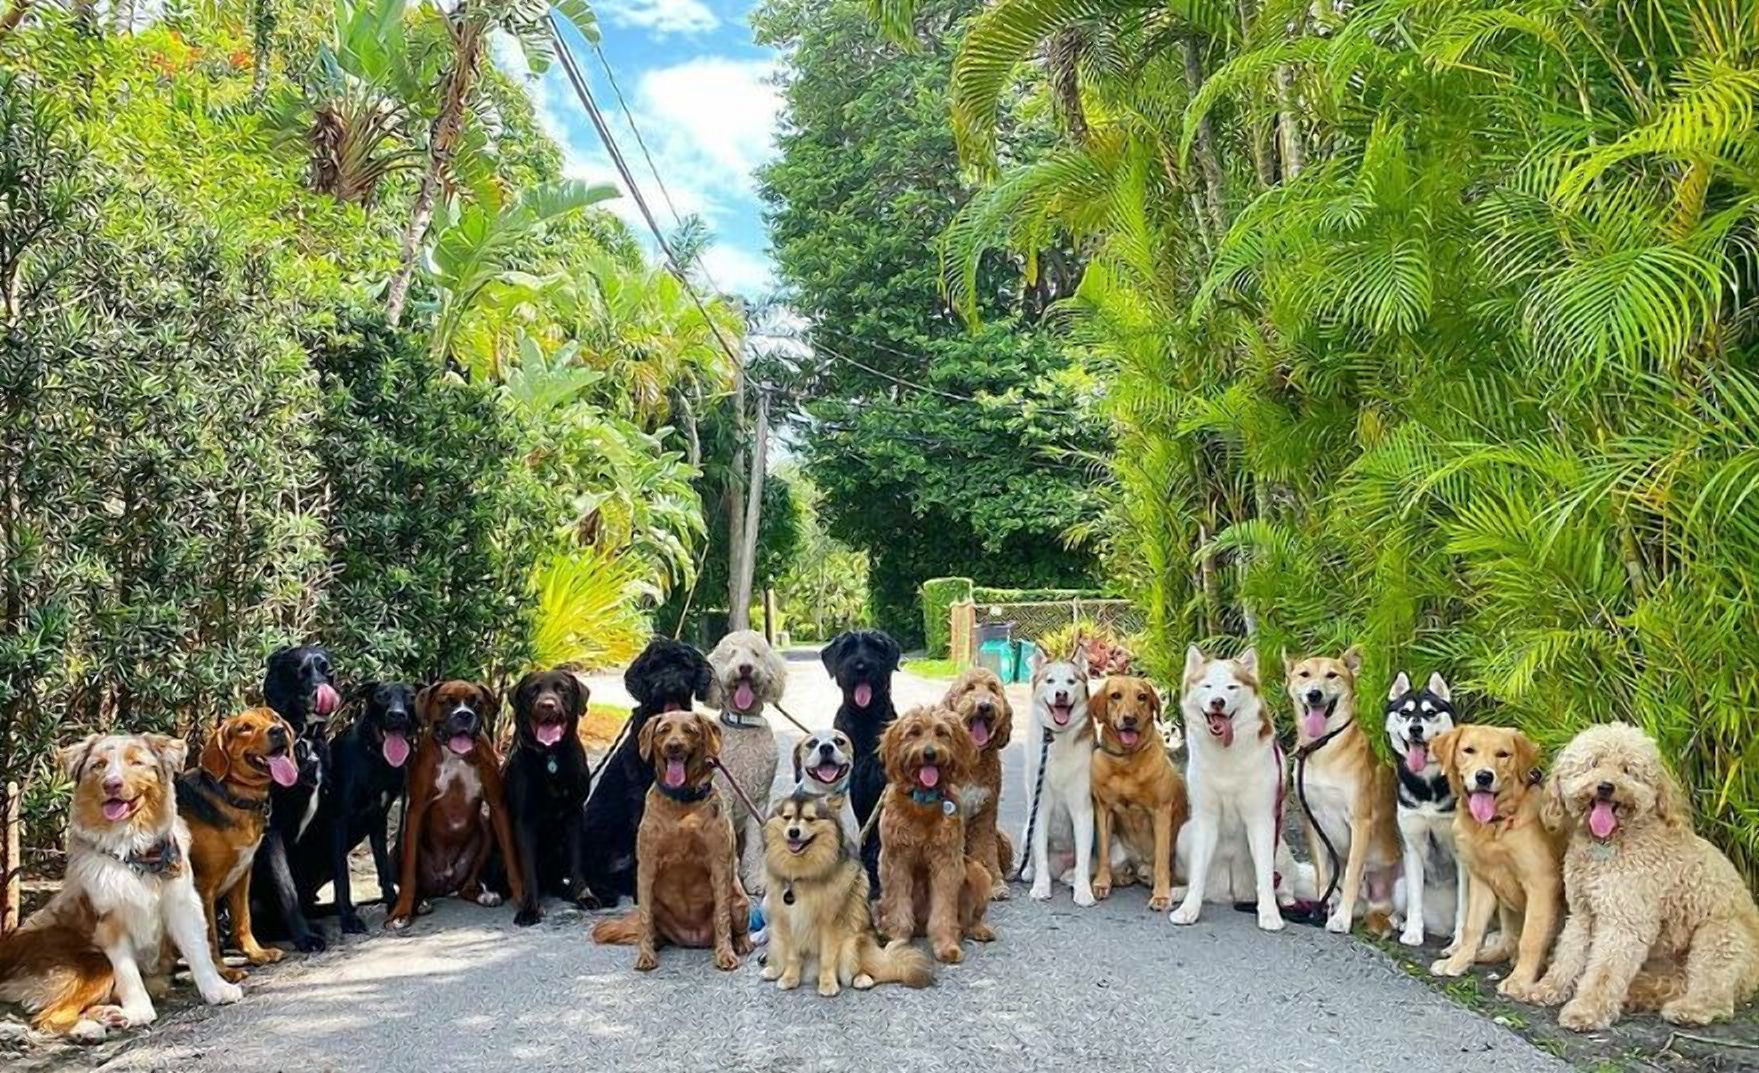 Ідеальні моделі: неймовірні групові світлини собак, яким позаздрить будь-який фотограф